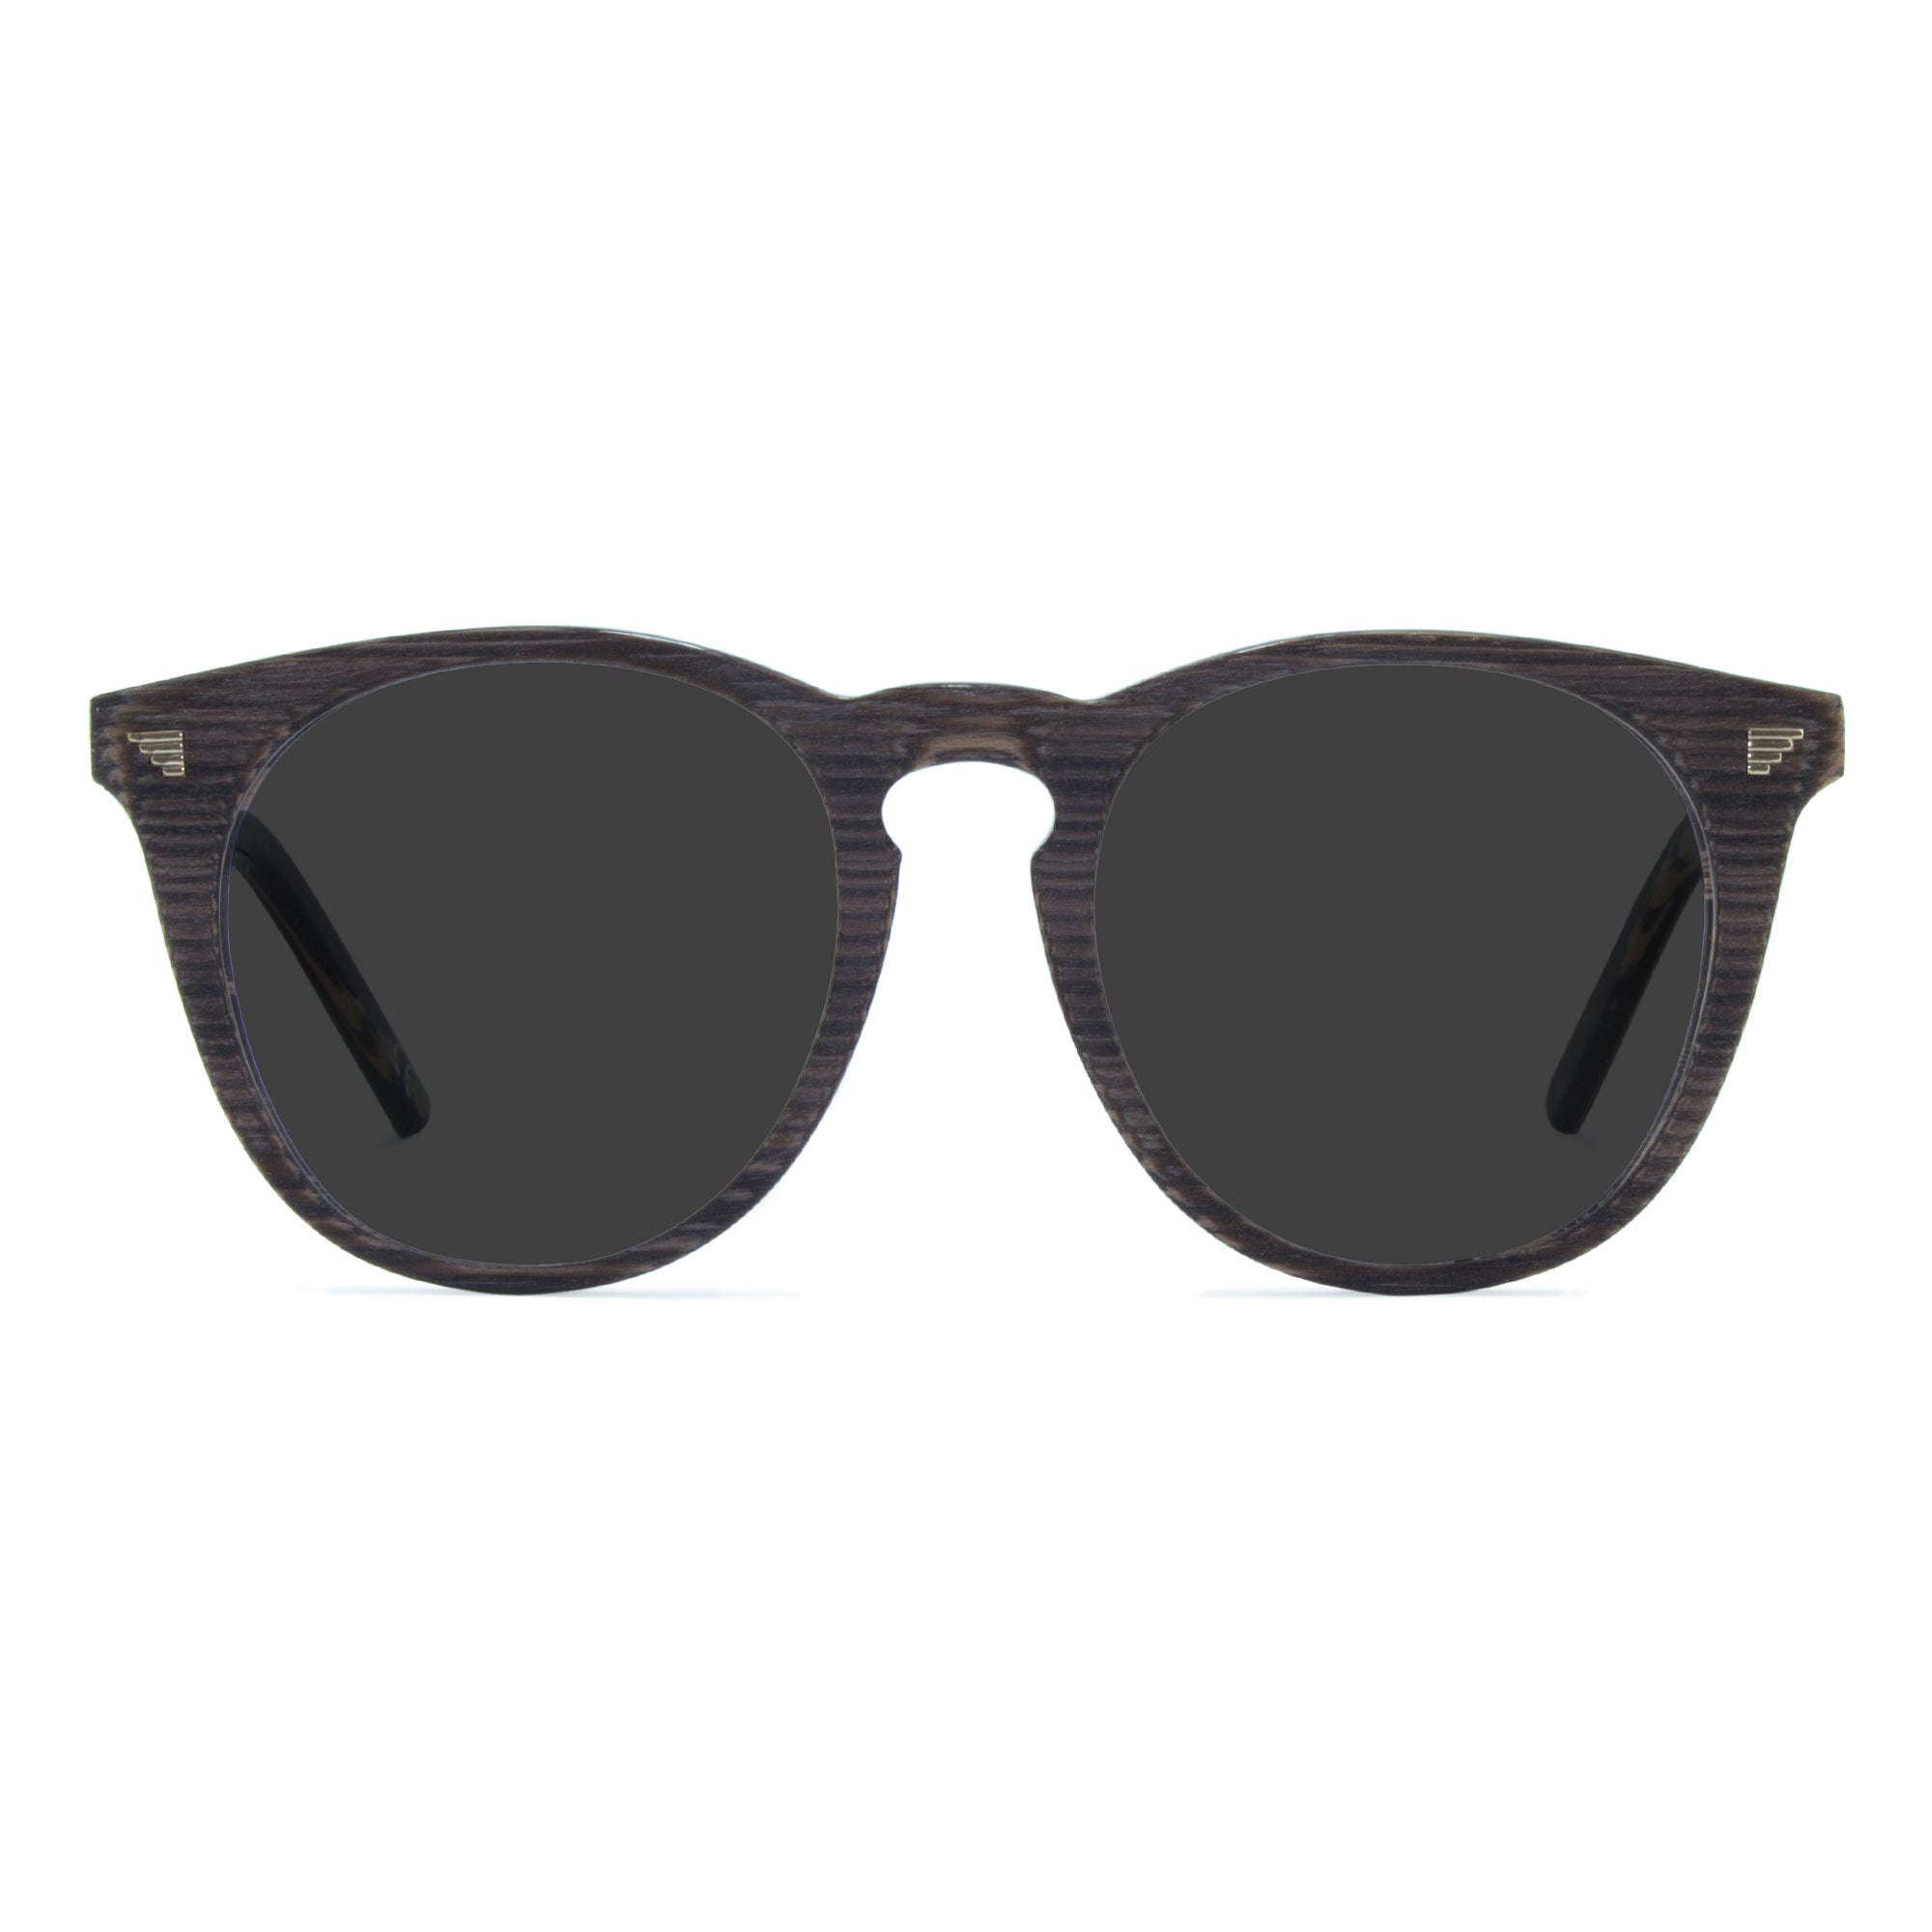 dark grey round sunglasses